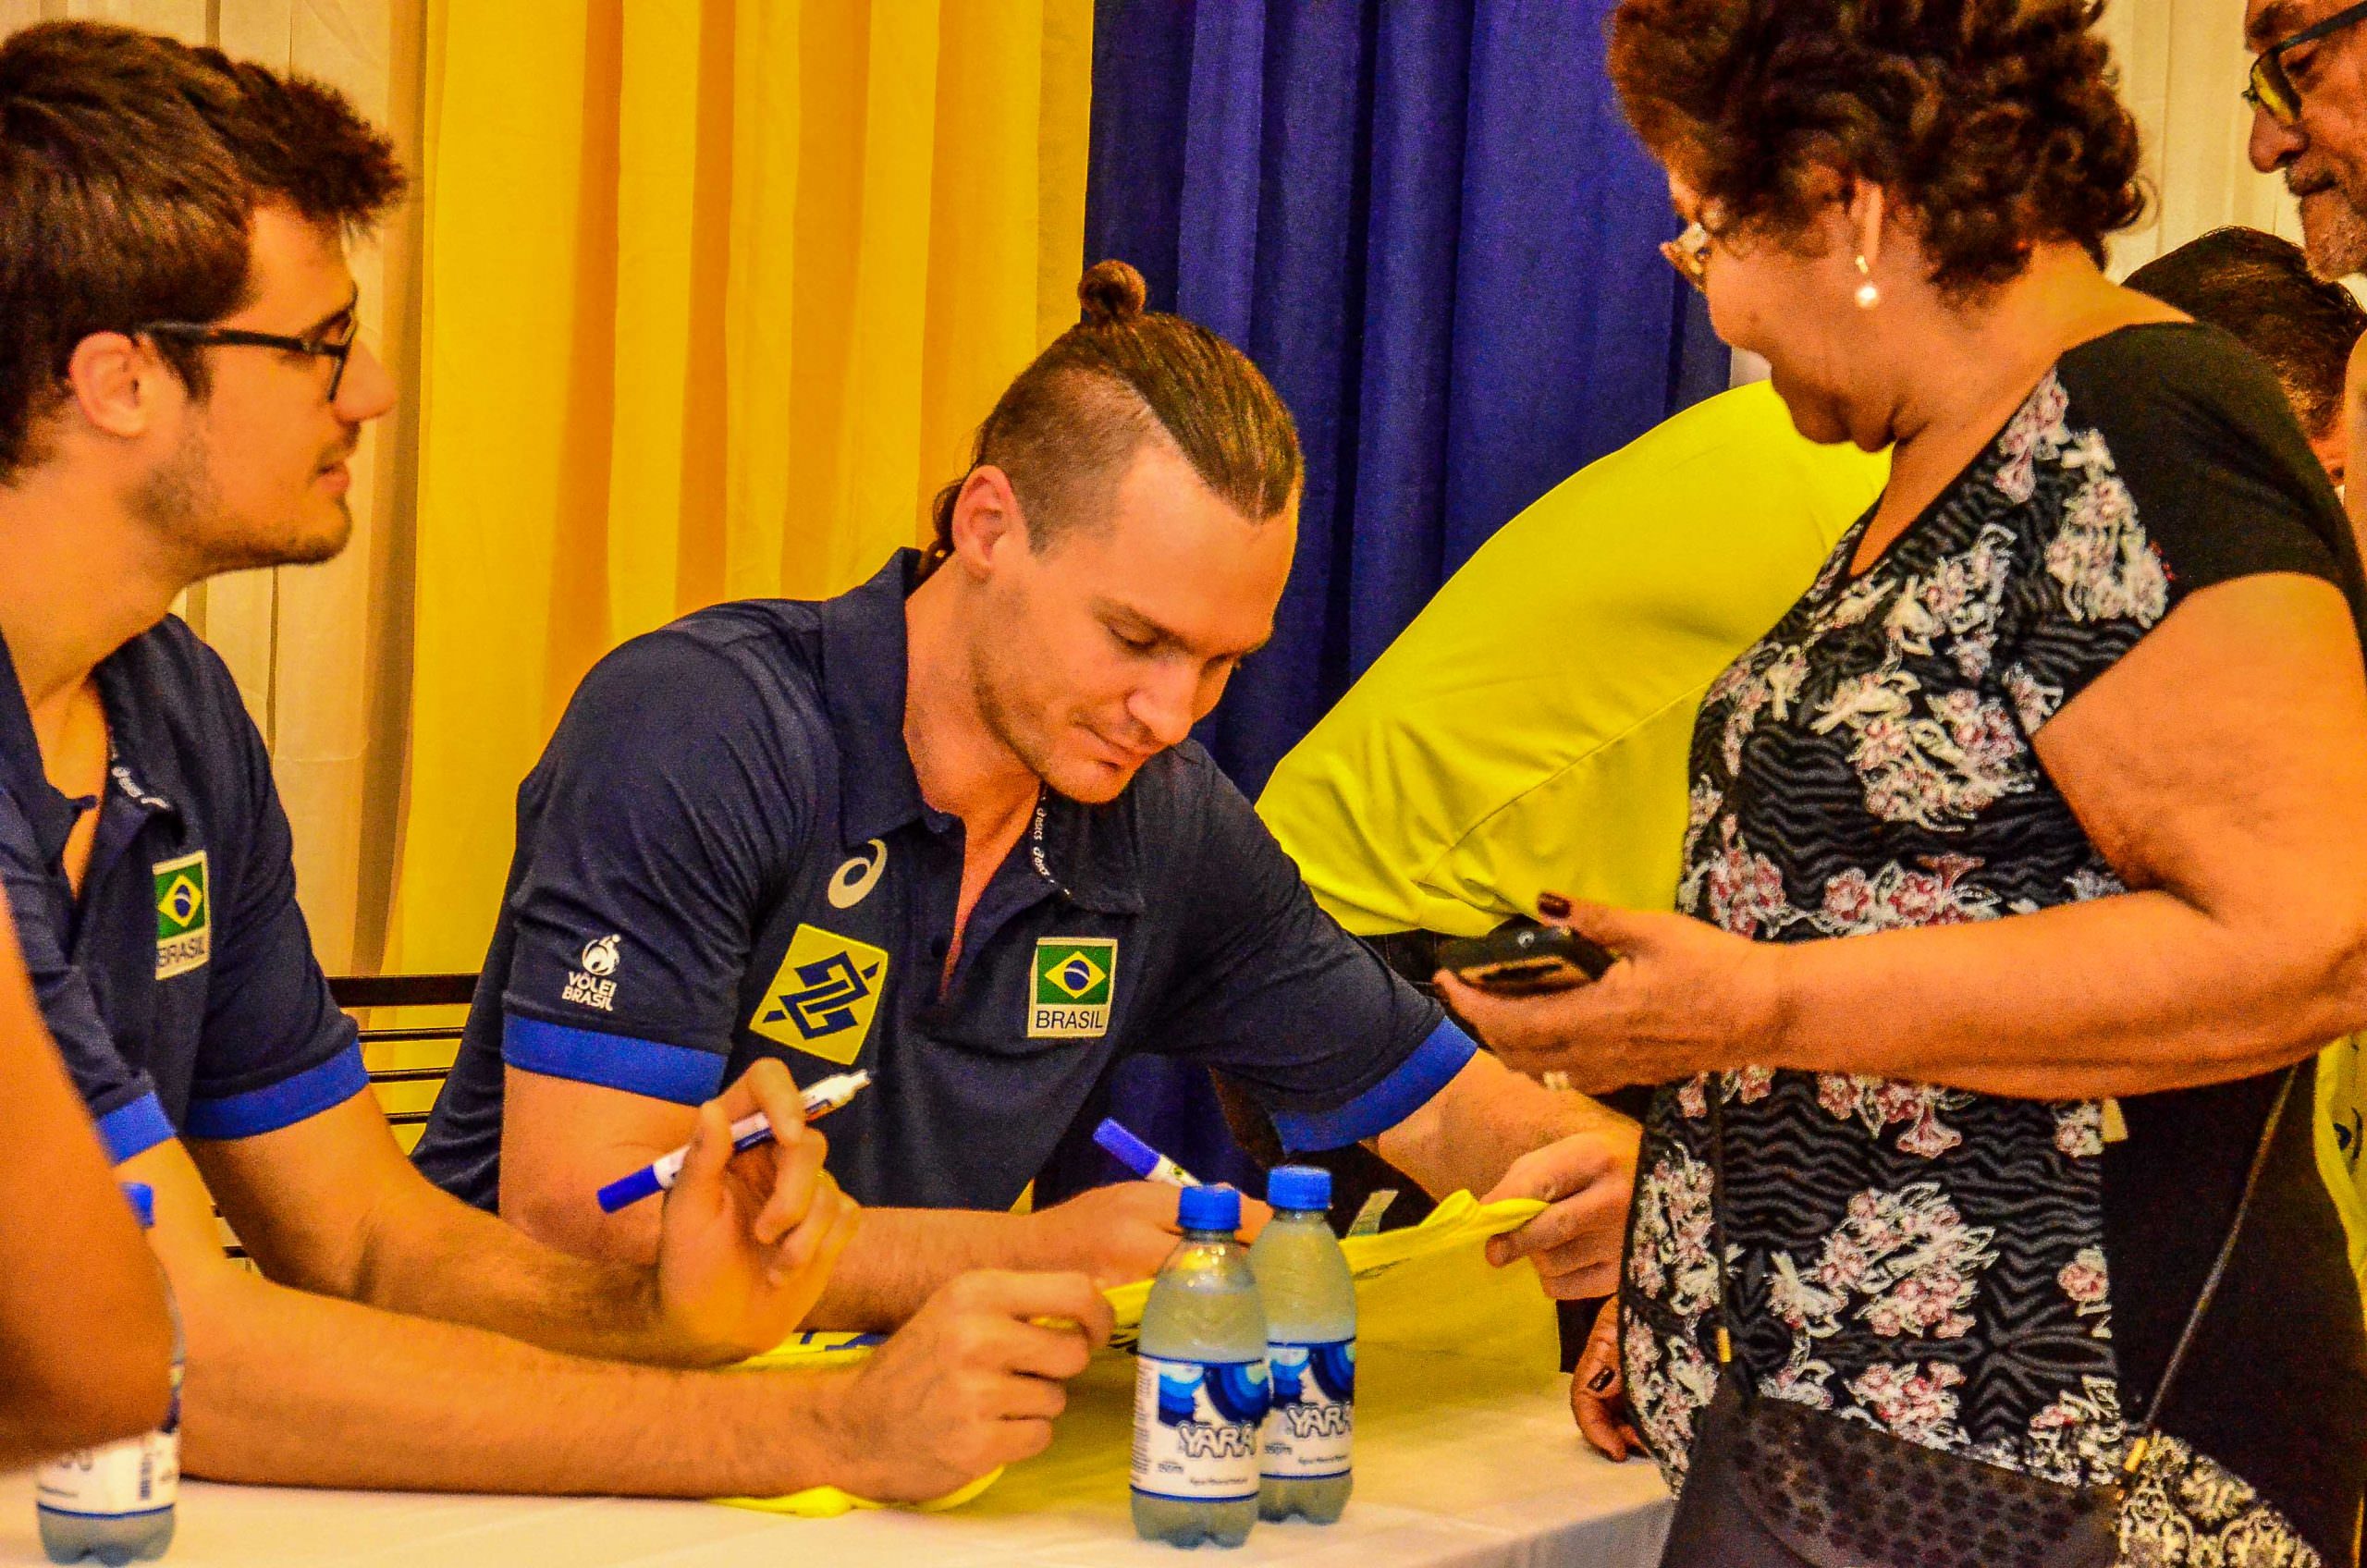 Seleção Brasileira de Vôlei reúne fãs e é aclamada em sessão de autógrafos em Manaus